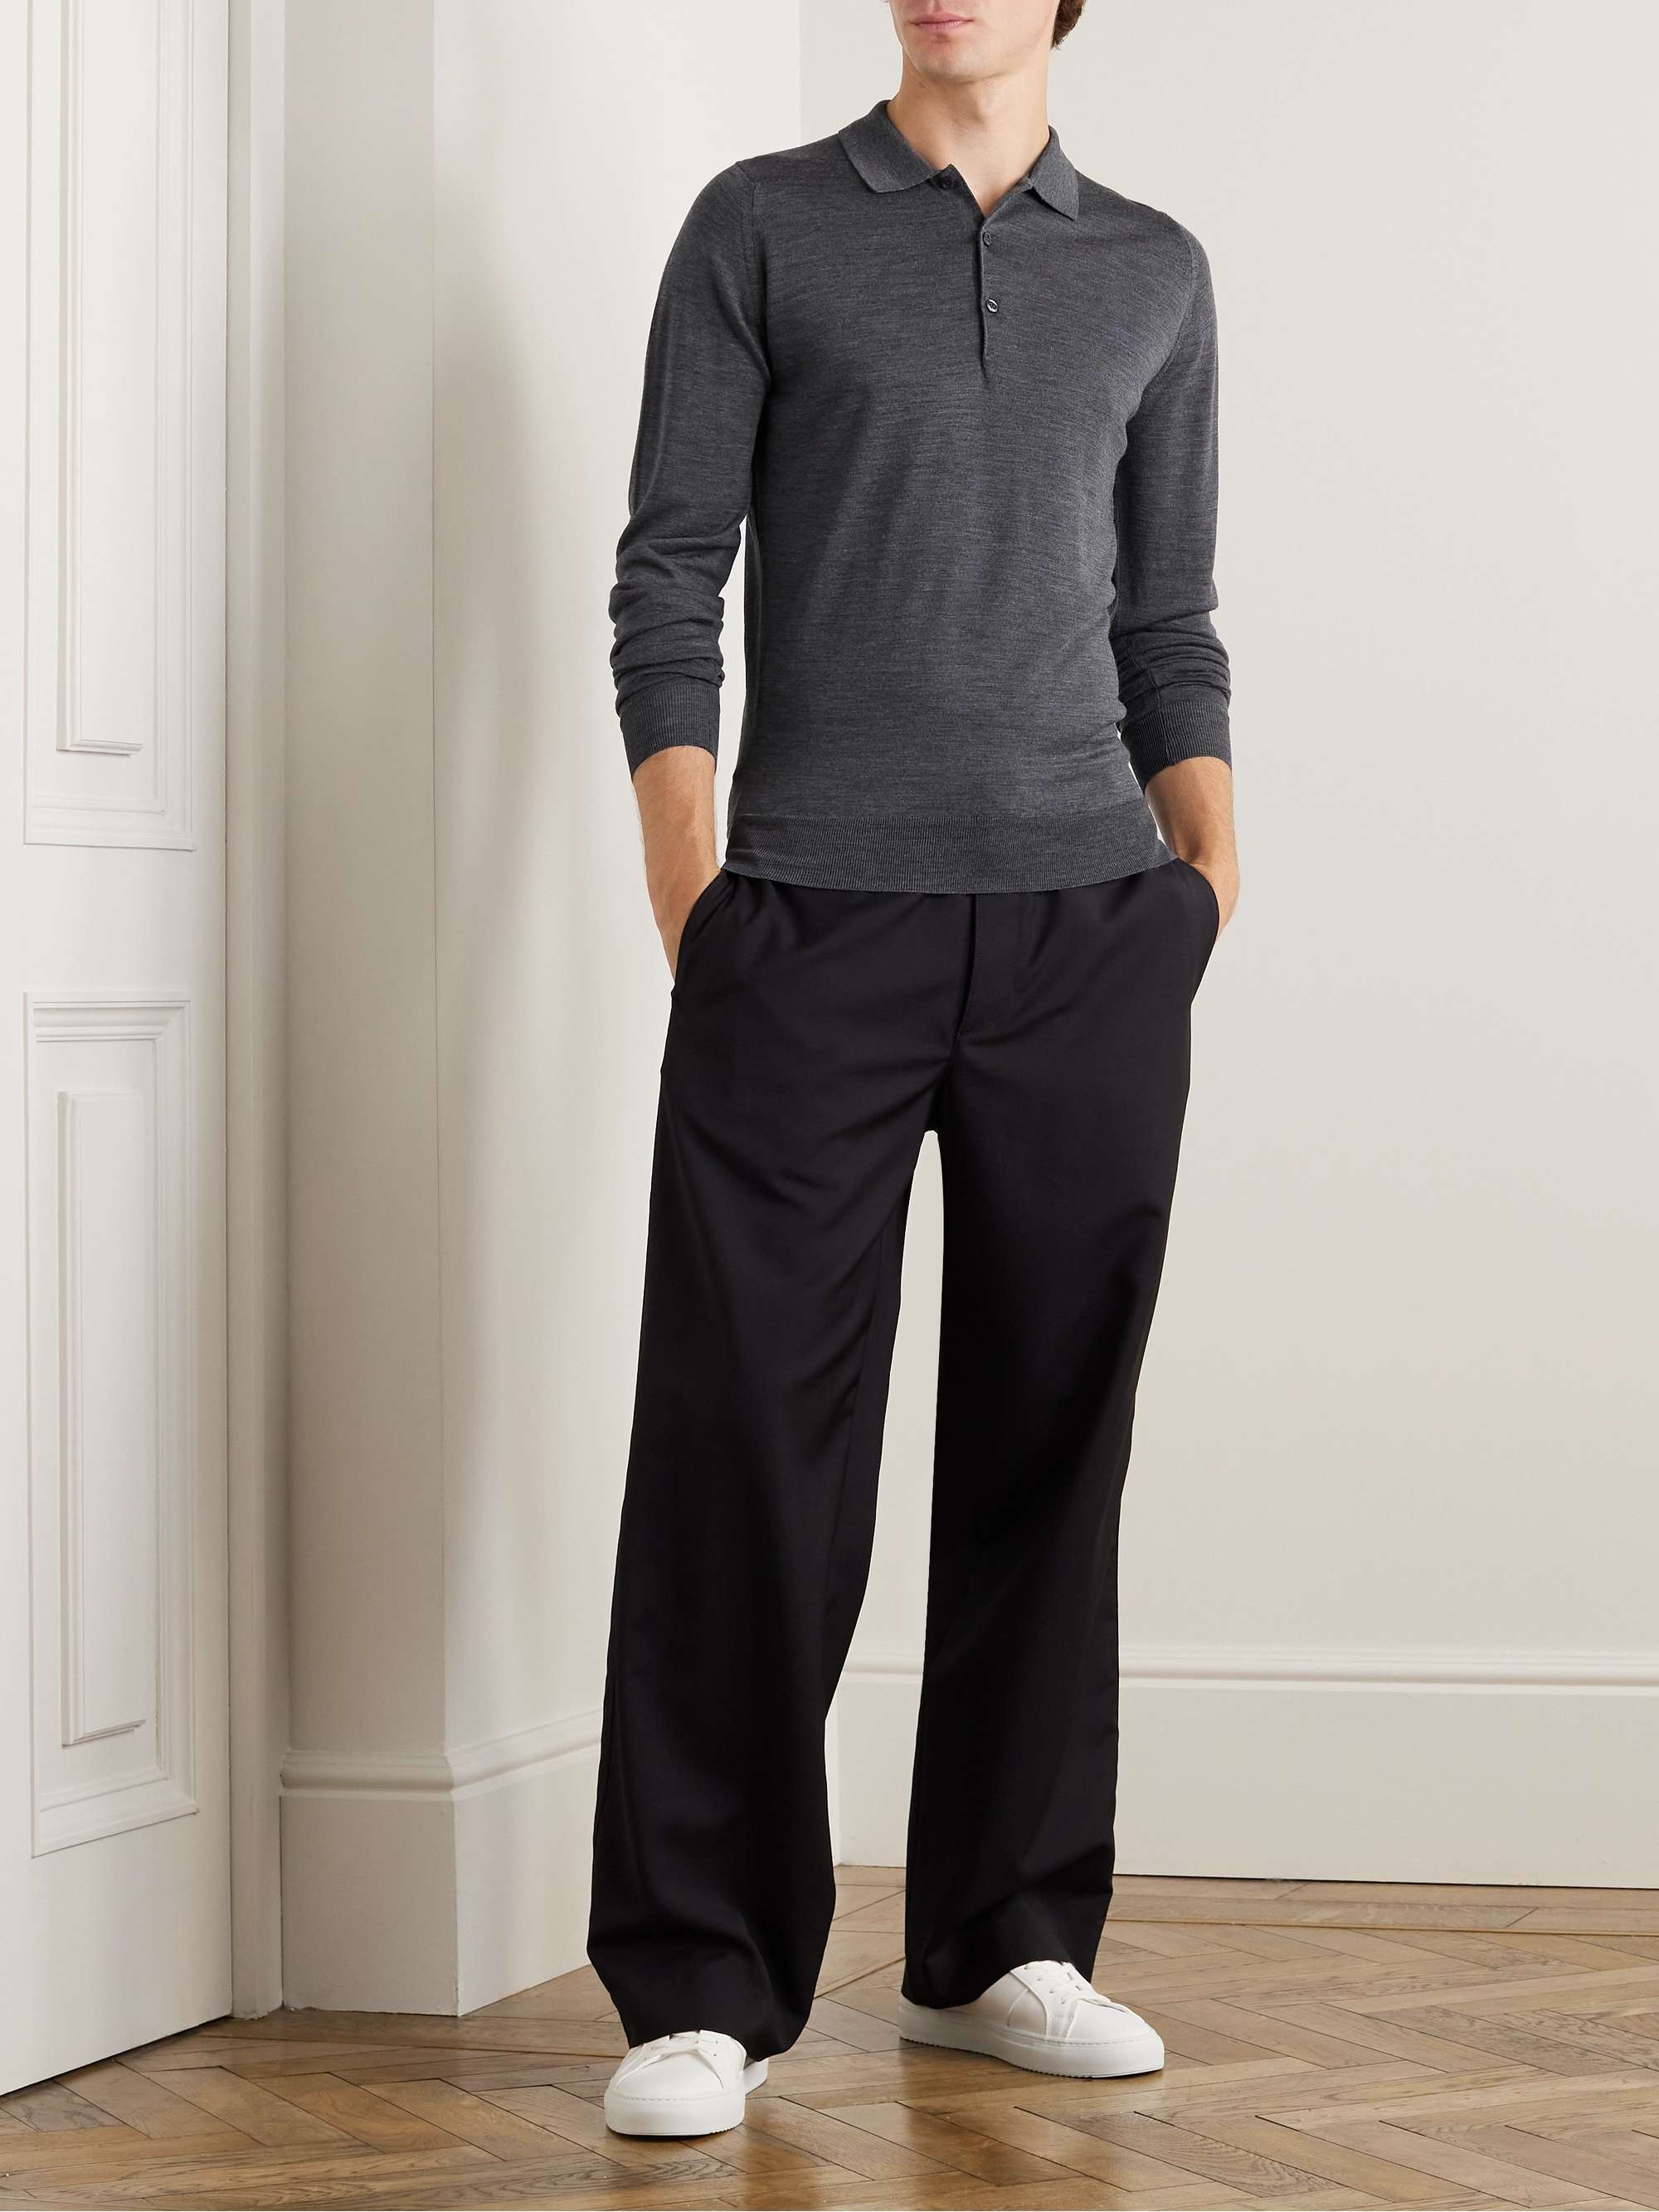 JOHN SMEDLEY Belper Slim-Fit Merino Wool Polo Shirt for Men | MR PORTER